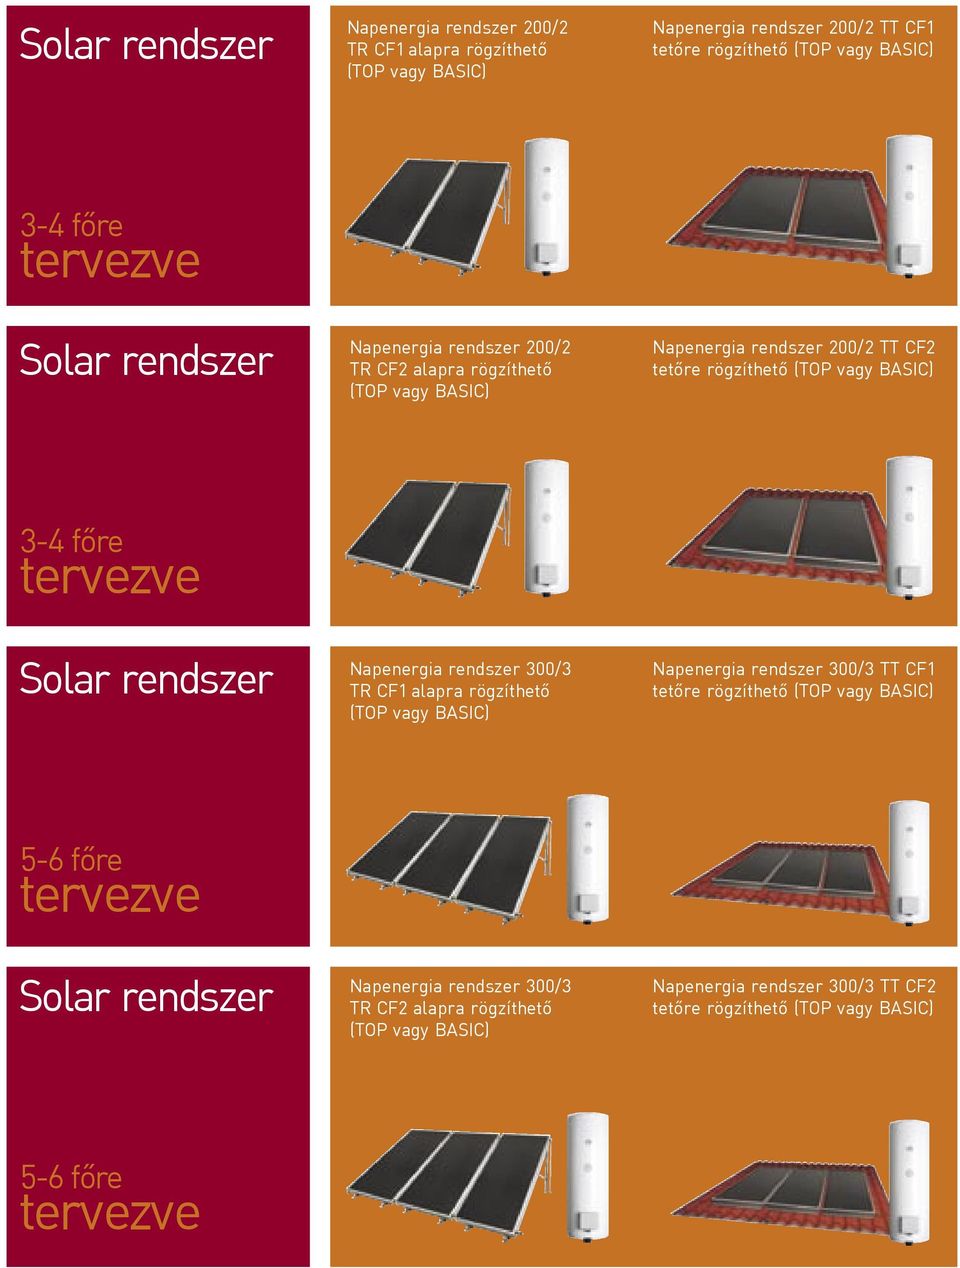 Solar rendszer Napenergia rendszer 300/3 TR CF1 alapra rögzíthető (TOP vagy BASIC) Napenergia rendszer 300/3 TT CF1 tetőre rögzíthető (TOP vagy BASIC) 56 főre tervezve